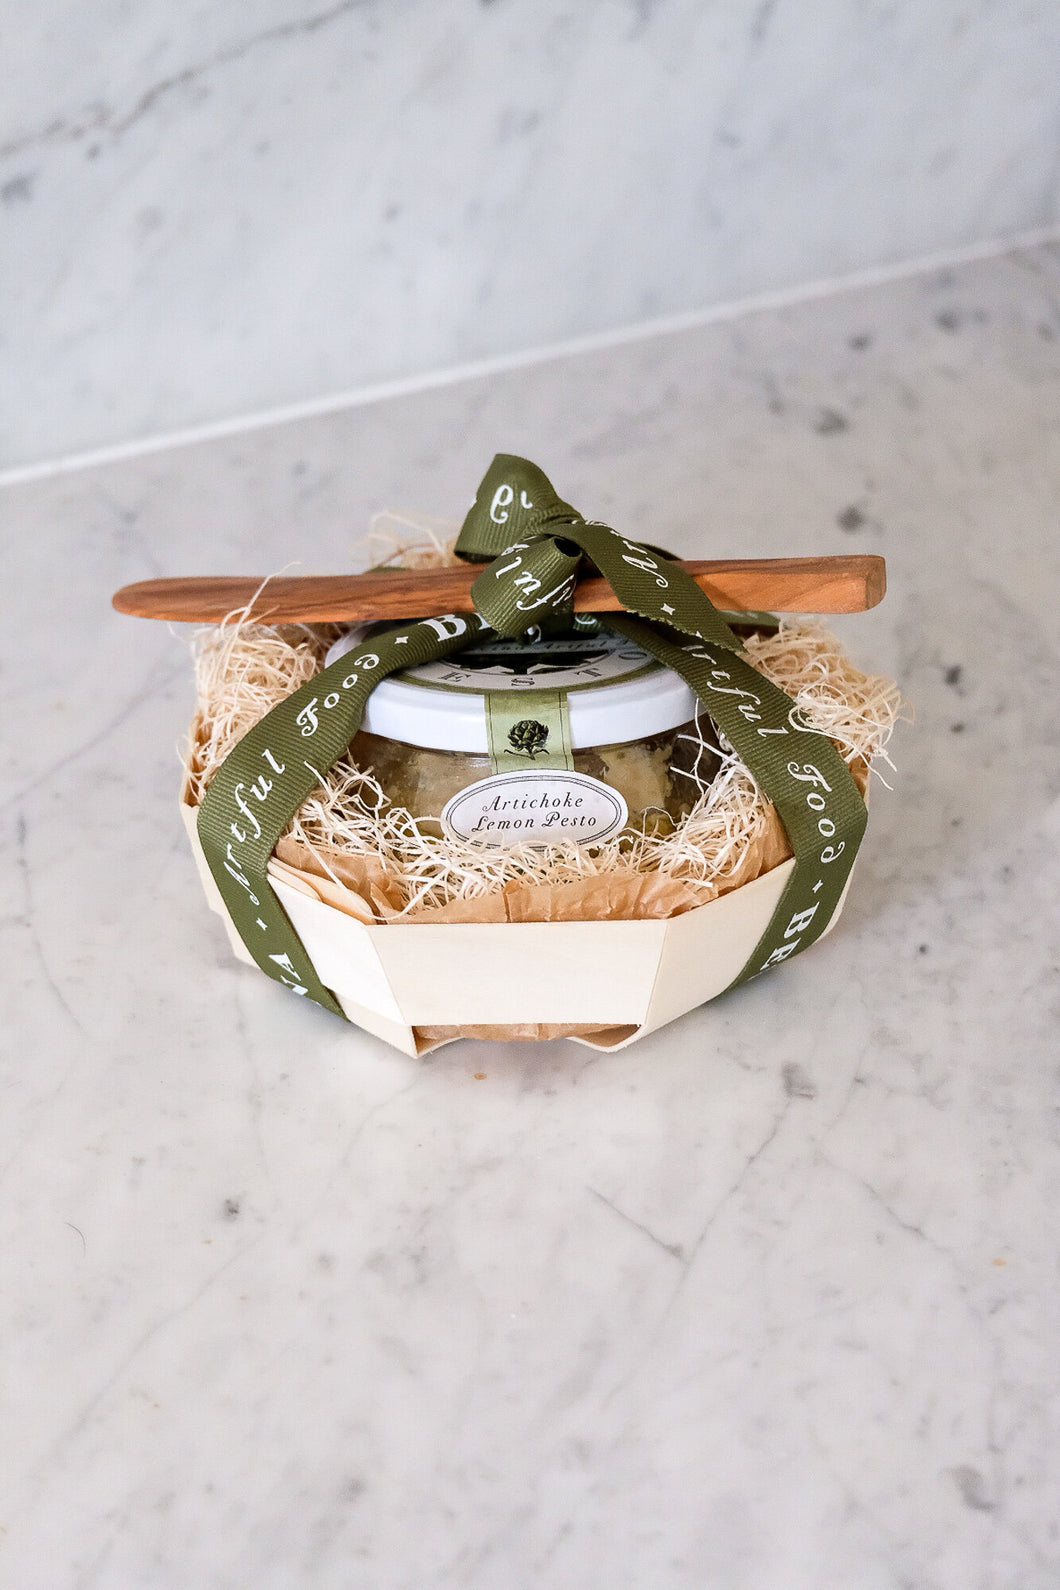 Artichoke Pesto Balsa Wood Baker Gift Set